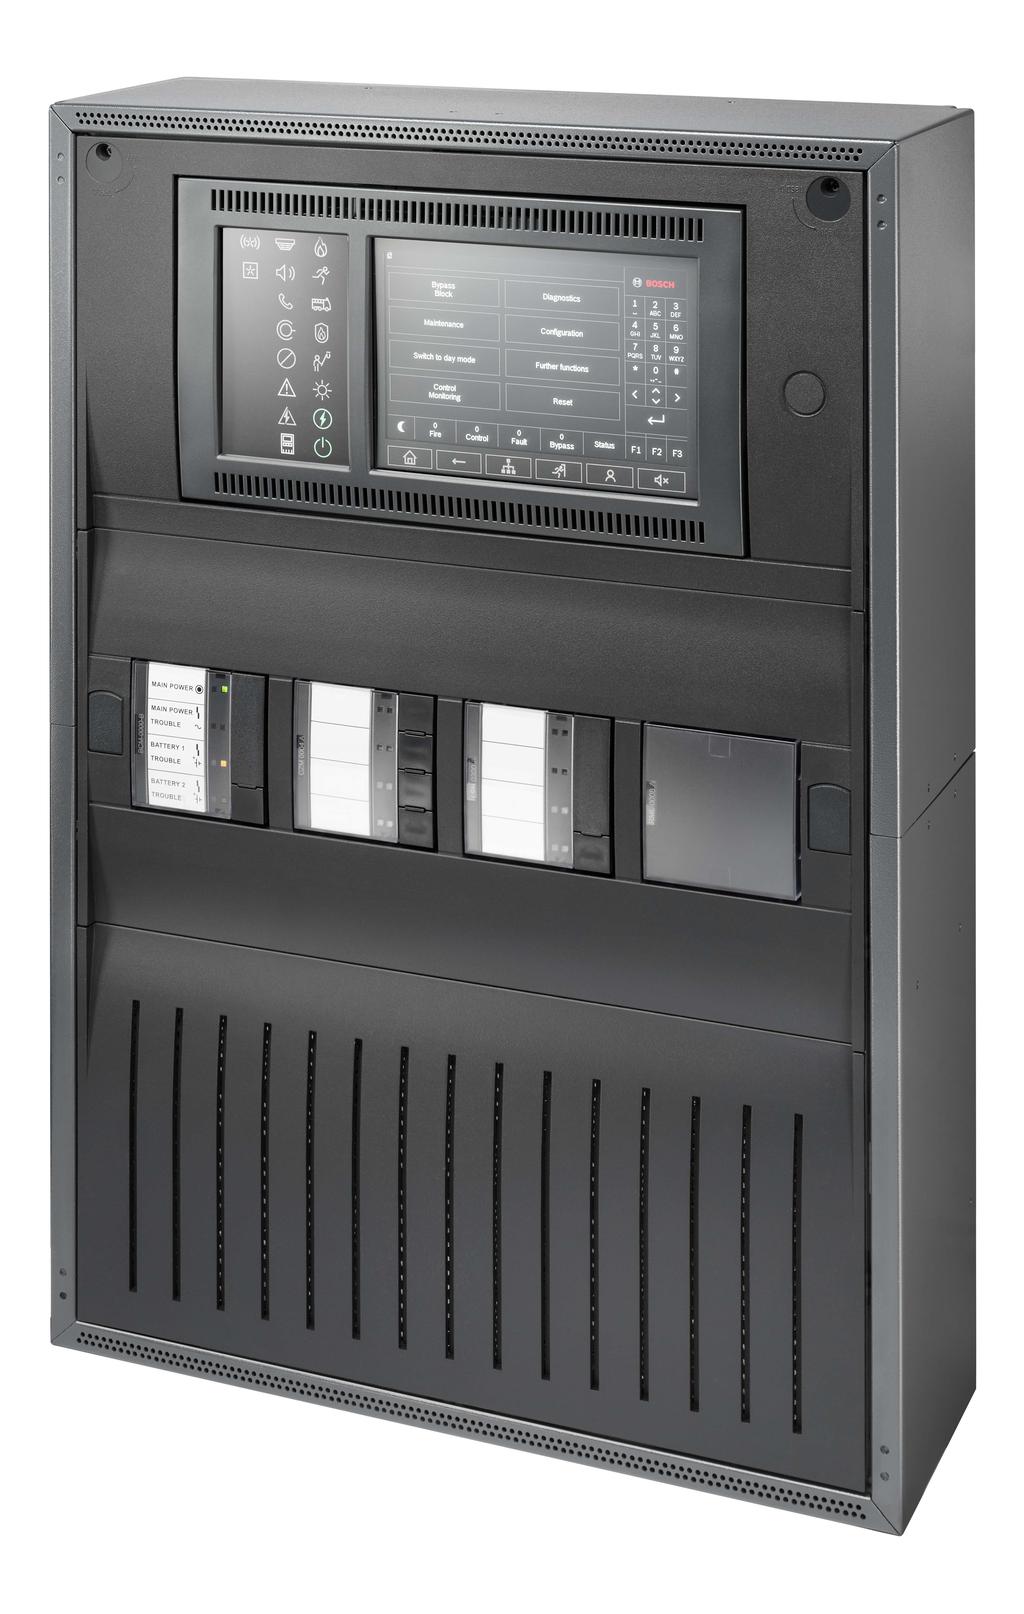 Sisteme de alarmă la incendiu - VENR panel 2000 VENR panel 2000 u Panoul de incendiu modular, compact, care poate fi extins până la 4 bucle, permite realizarea unor soluții personalizate pentru